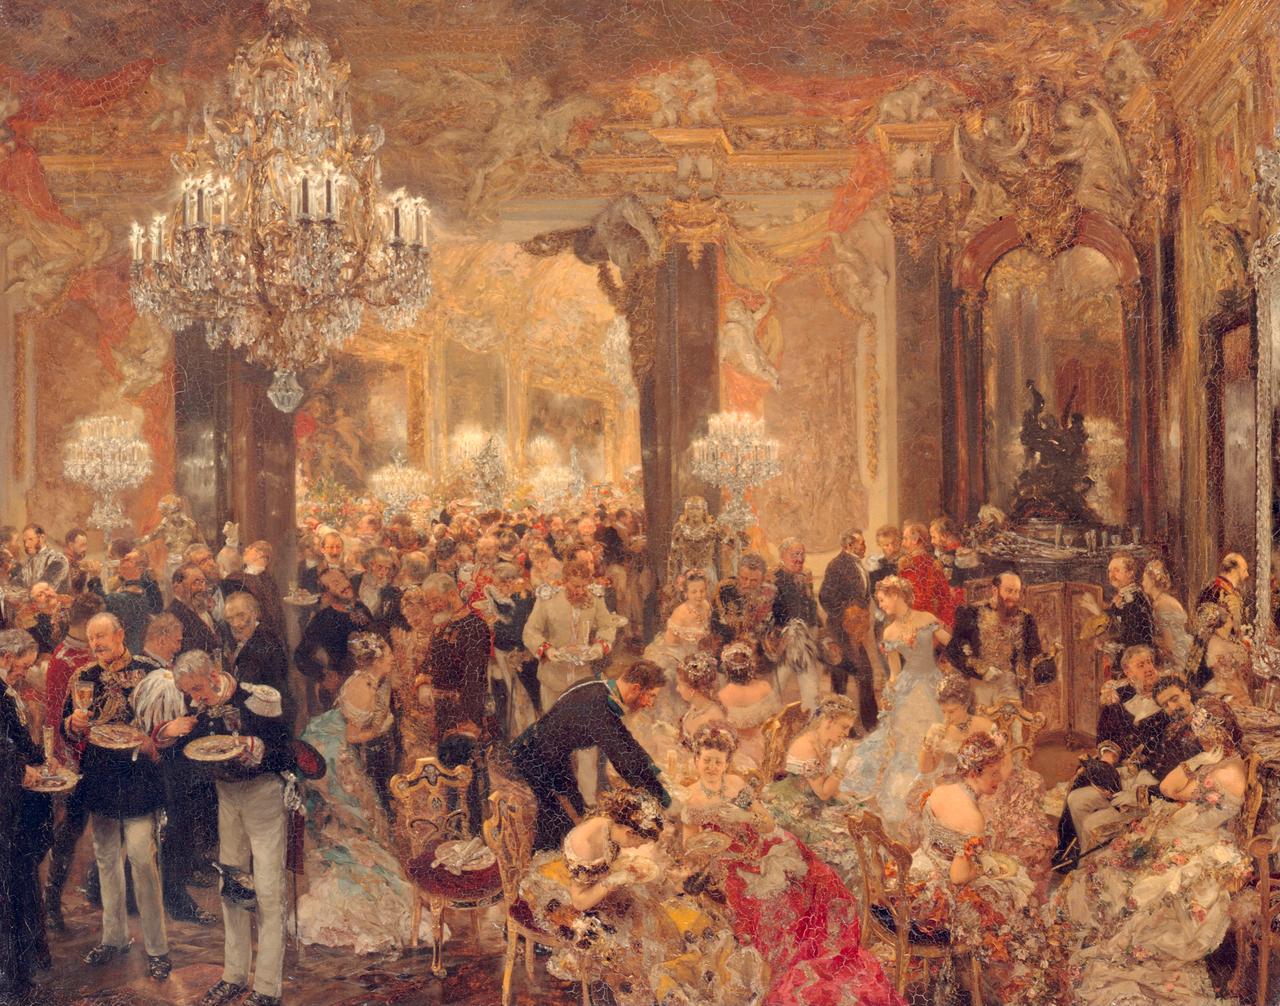 Das Gemälde von Adolph Menzel zeigt eine Ballszene in einem opulenten Saal mit großen Kronenleuchtern.